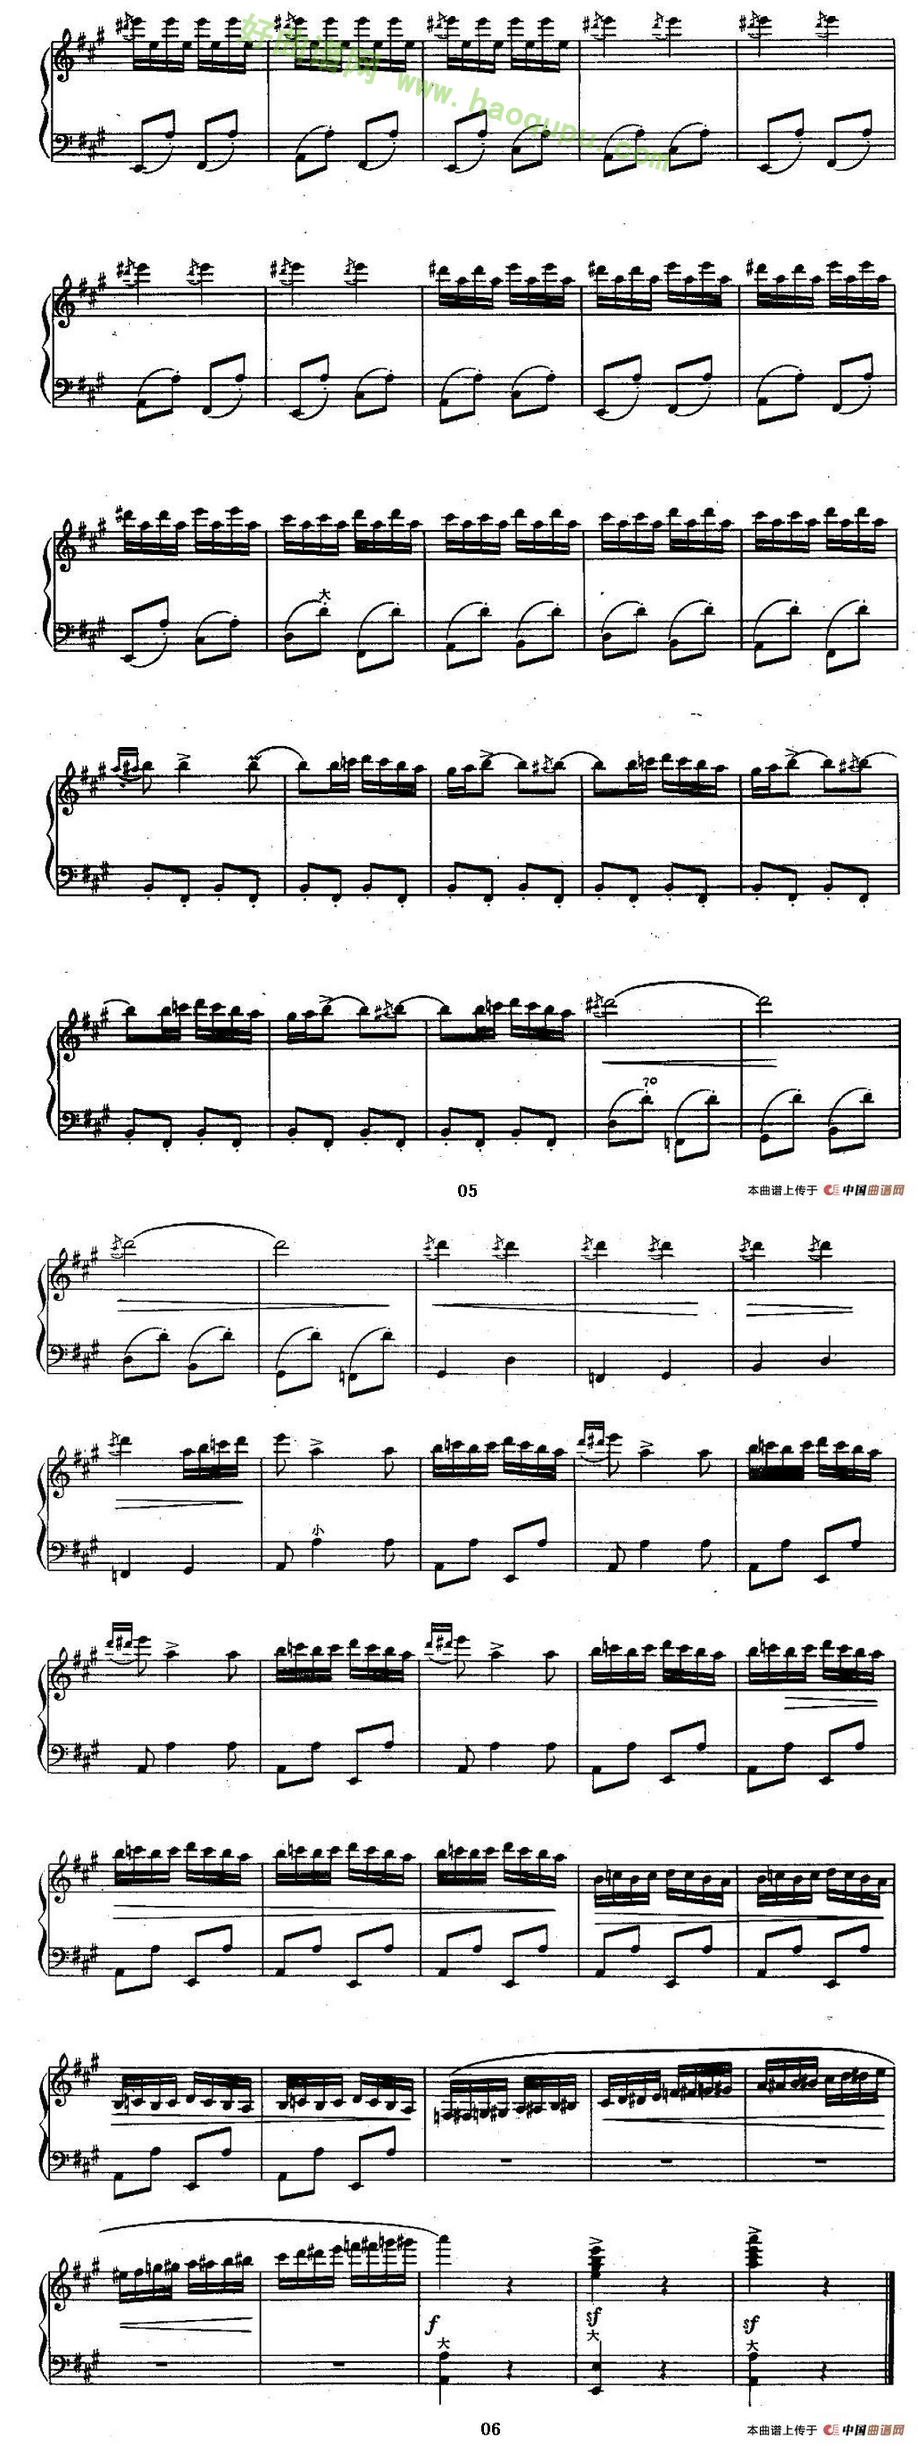 《云雀》（罗马尼亚民间乐曲、陈志改编版）手风琴曲谱第2张